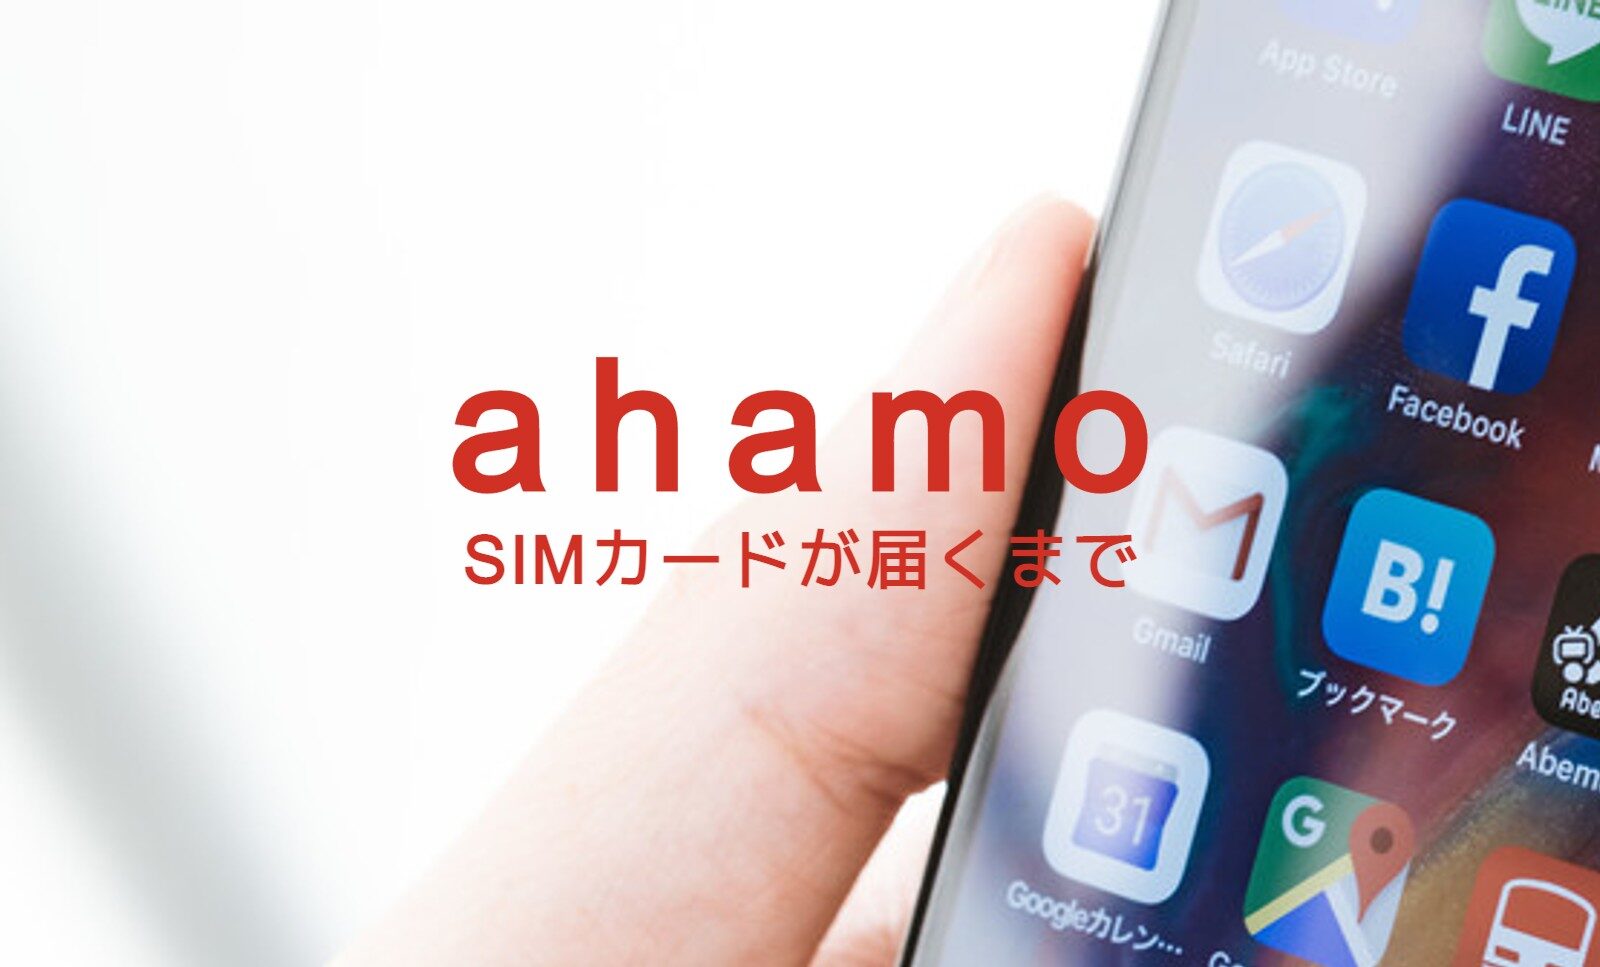 ahamo(アハモ)でSIMカードが届くまで通信回線は使えない？のサムネイル画像